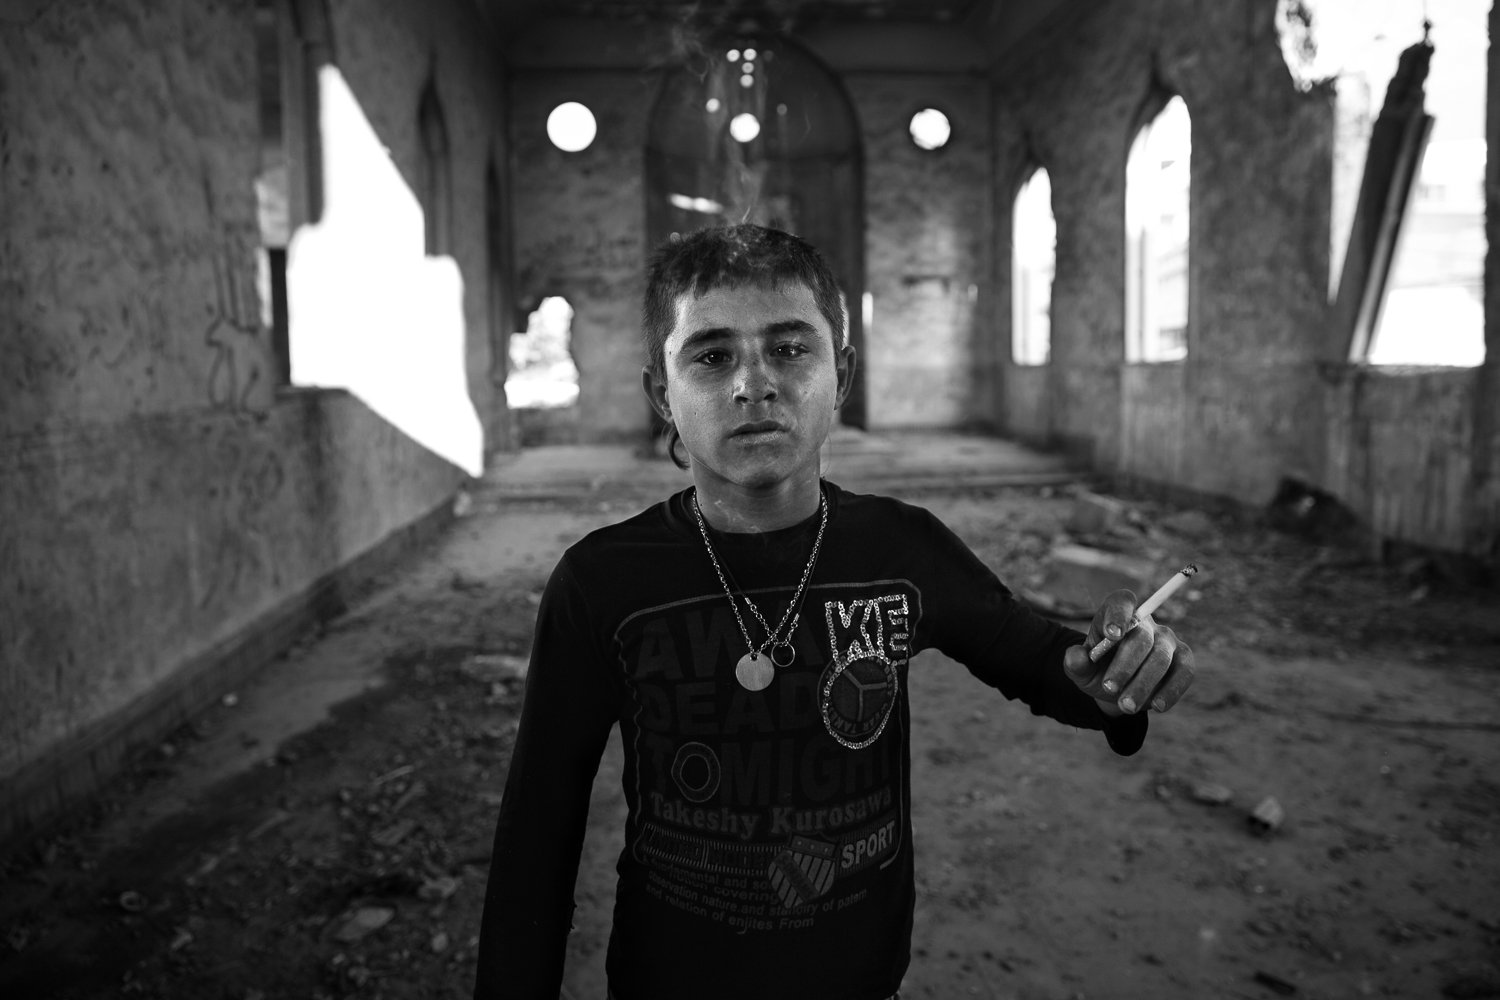 Hussem, 14 ans, pose dans le hall principal de l'école abandonnée. (photo Baudouin Nach/8e étage)